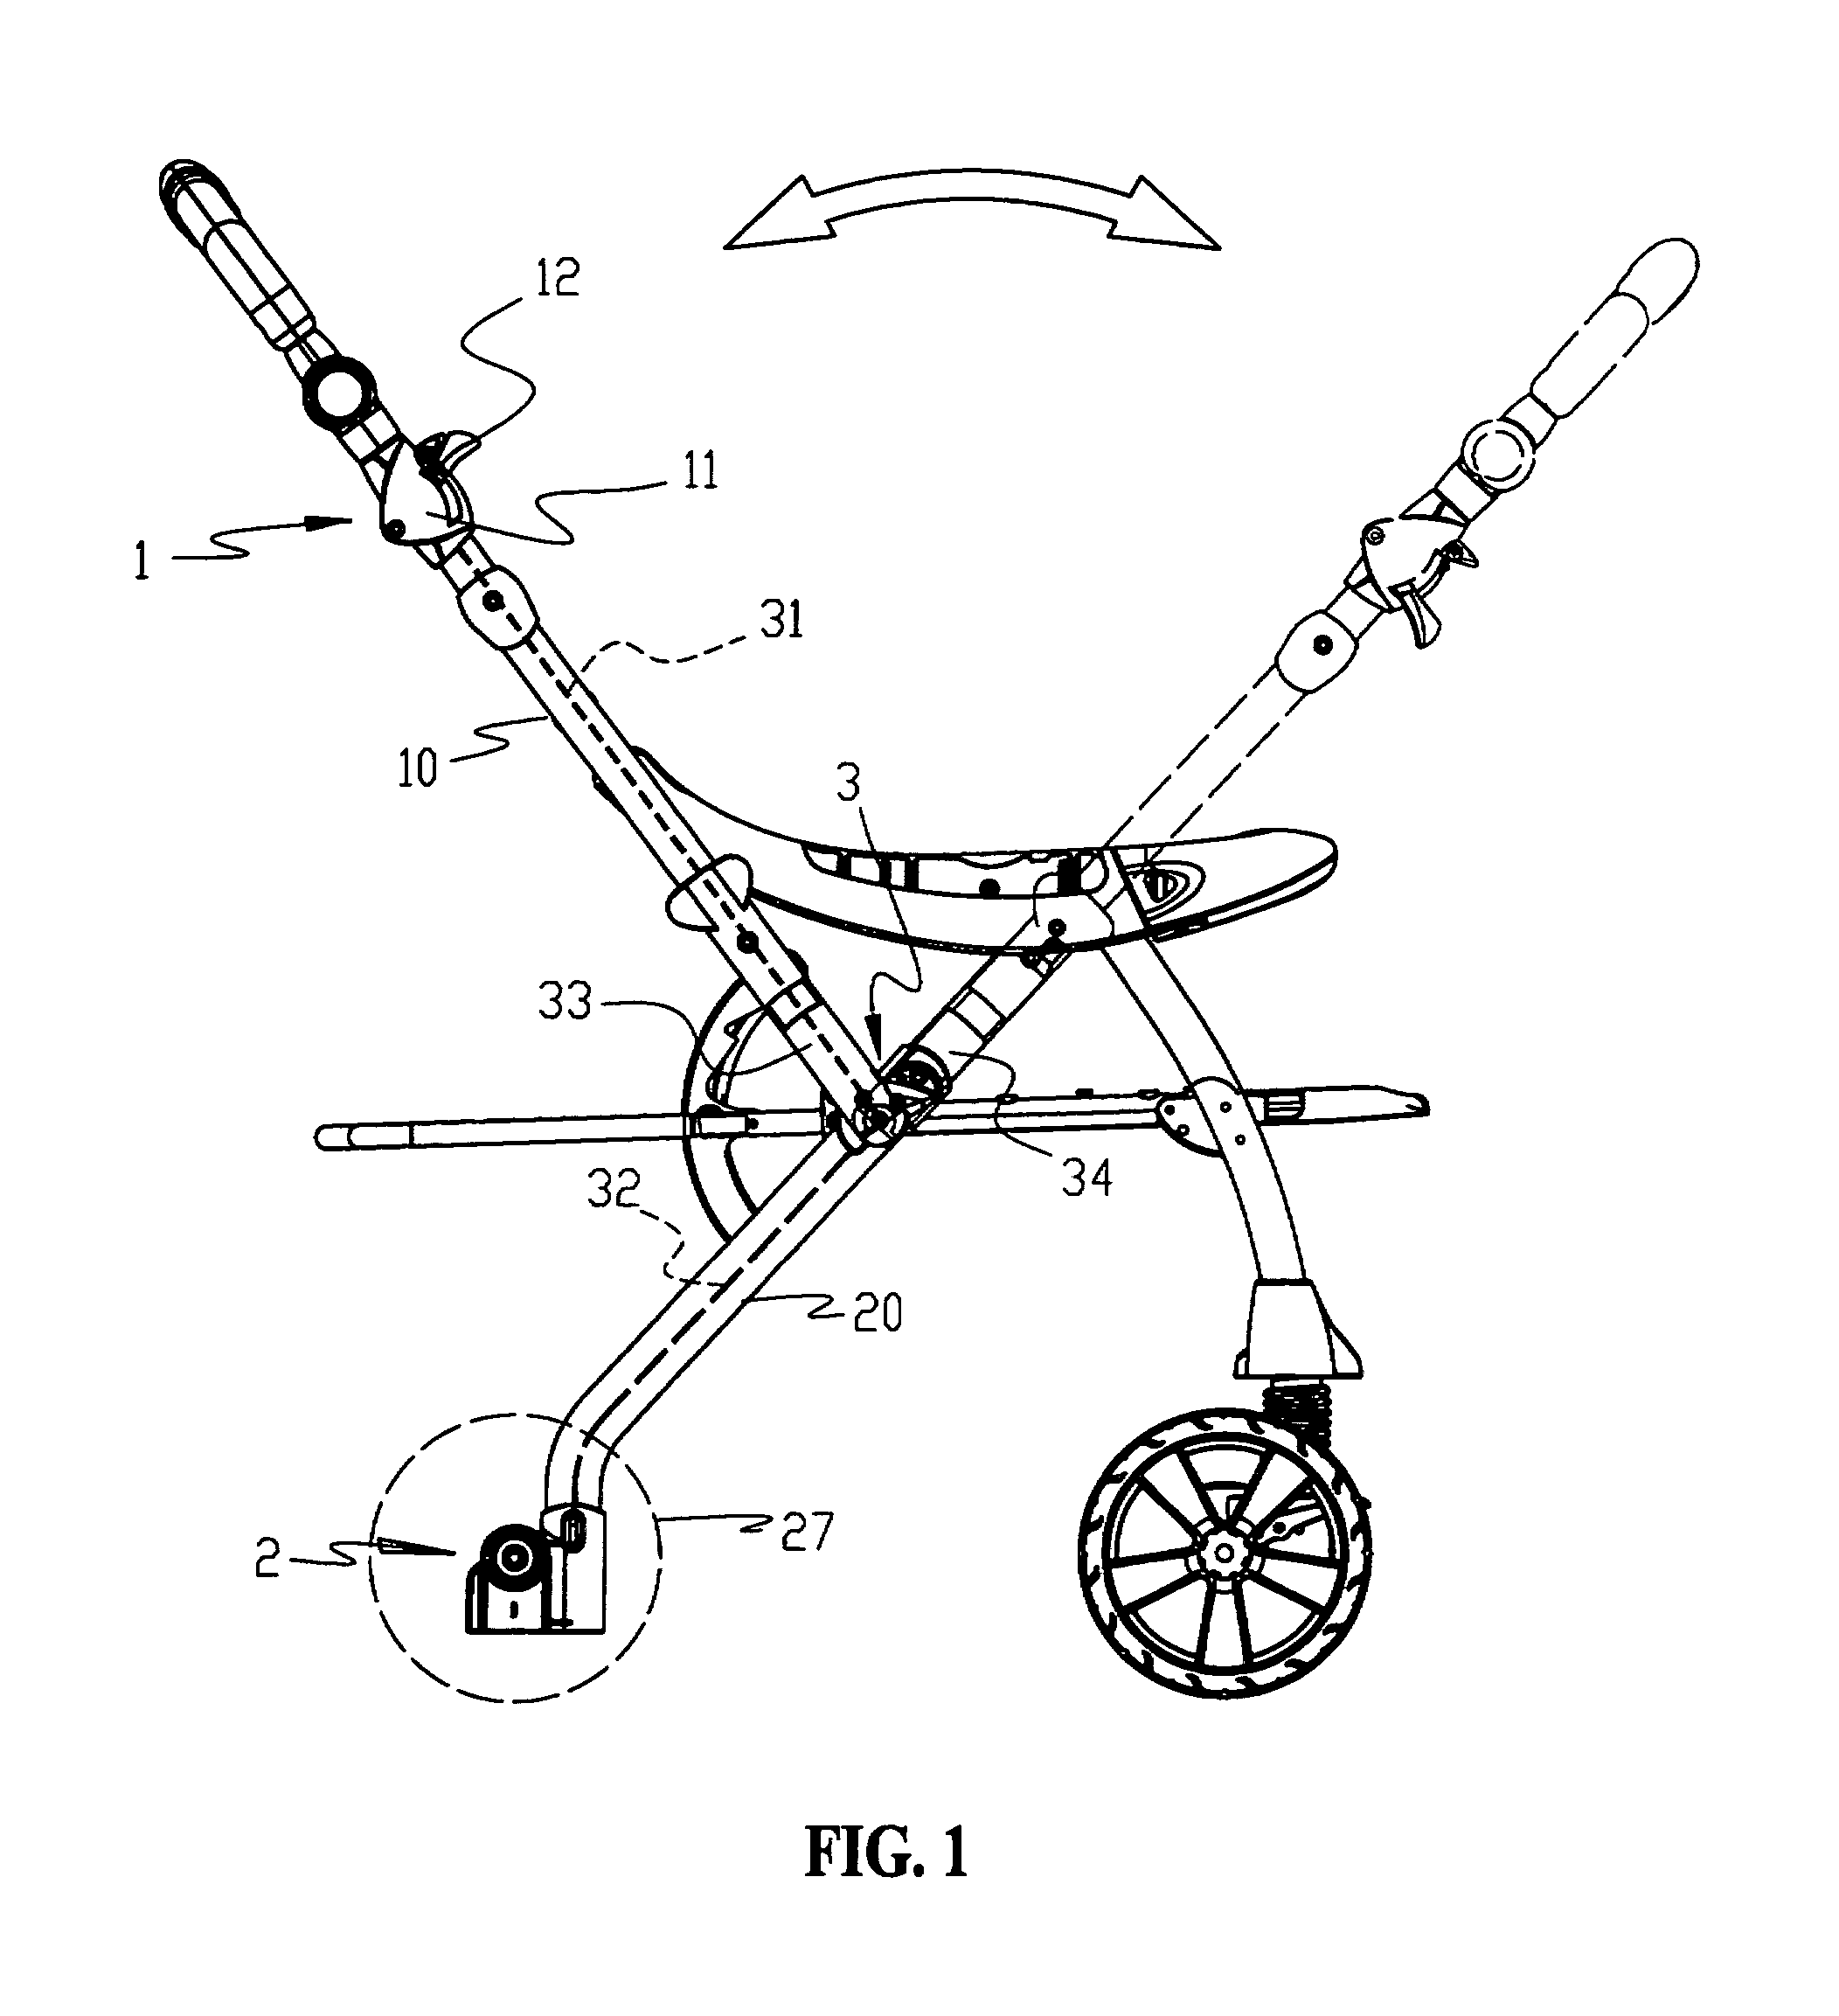 Brake mechanism for a baby stroller